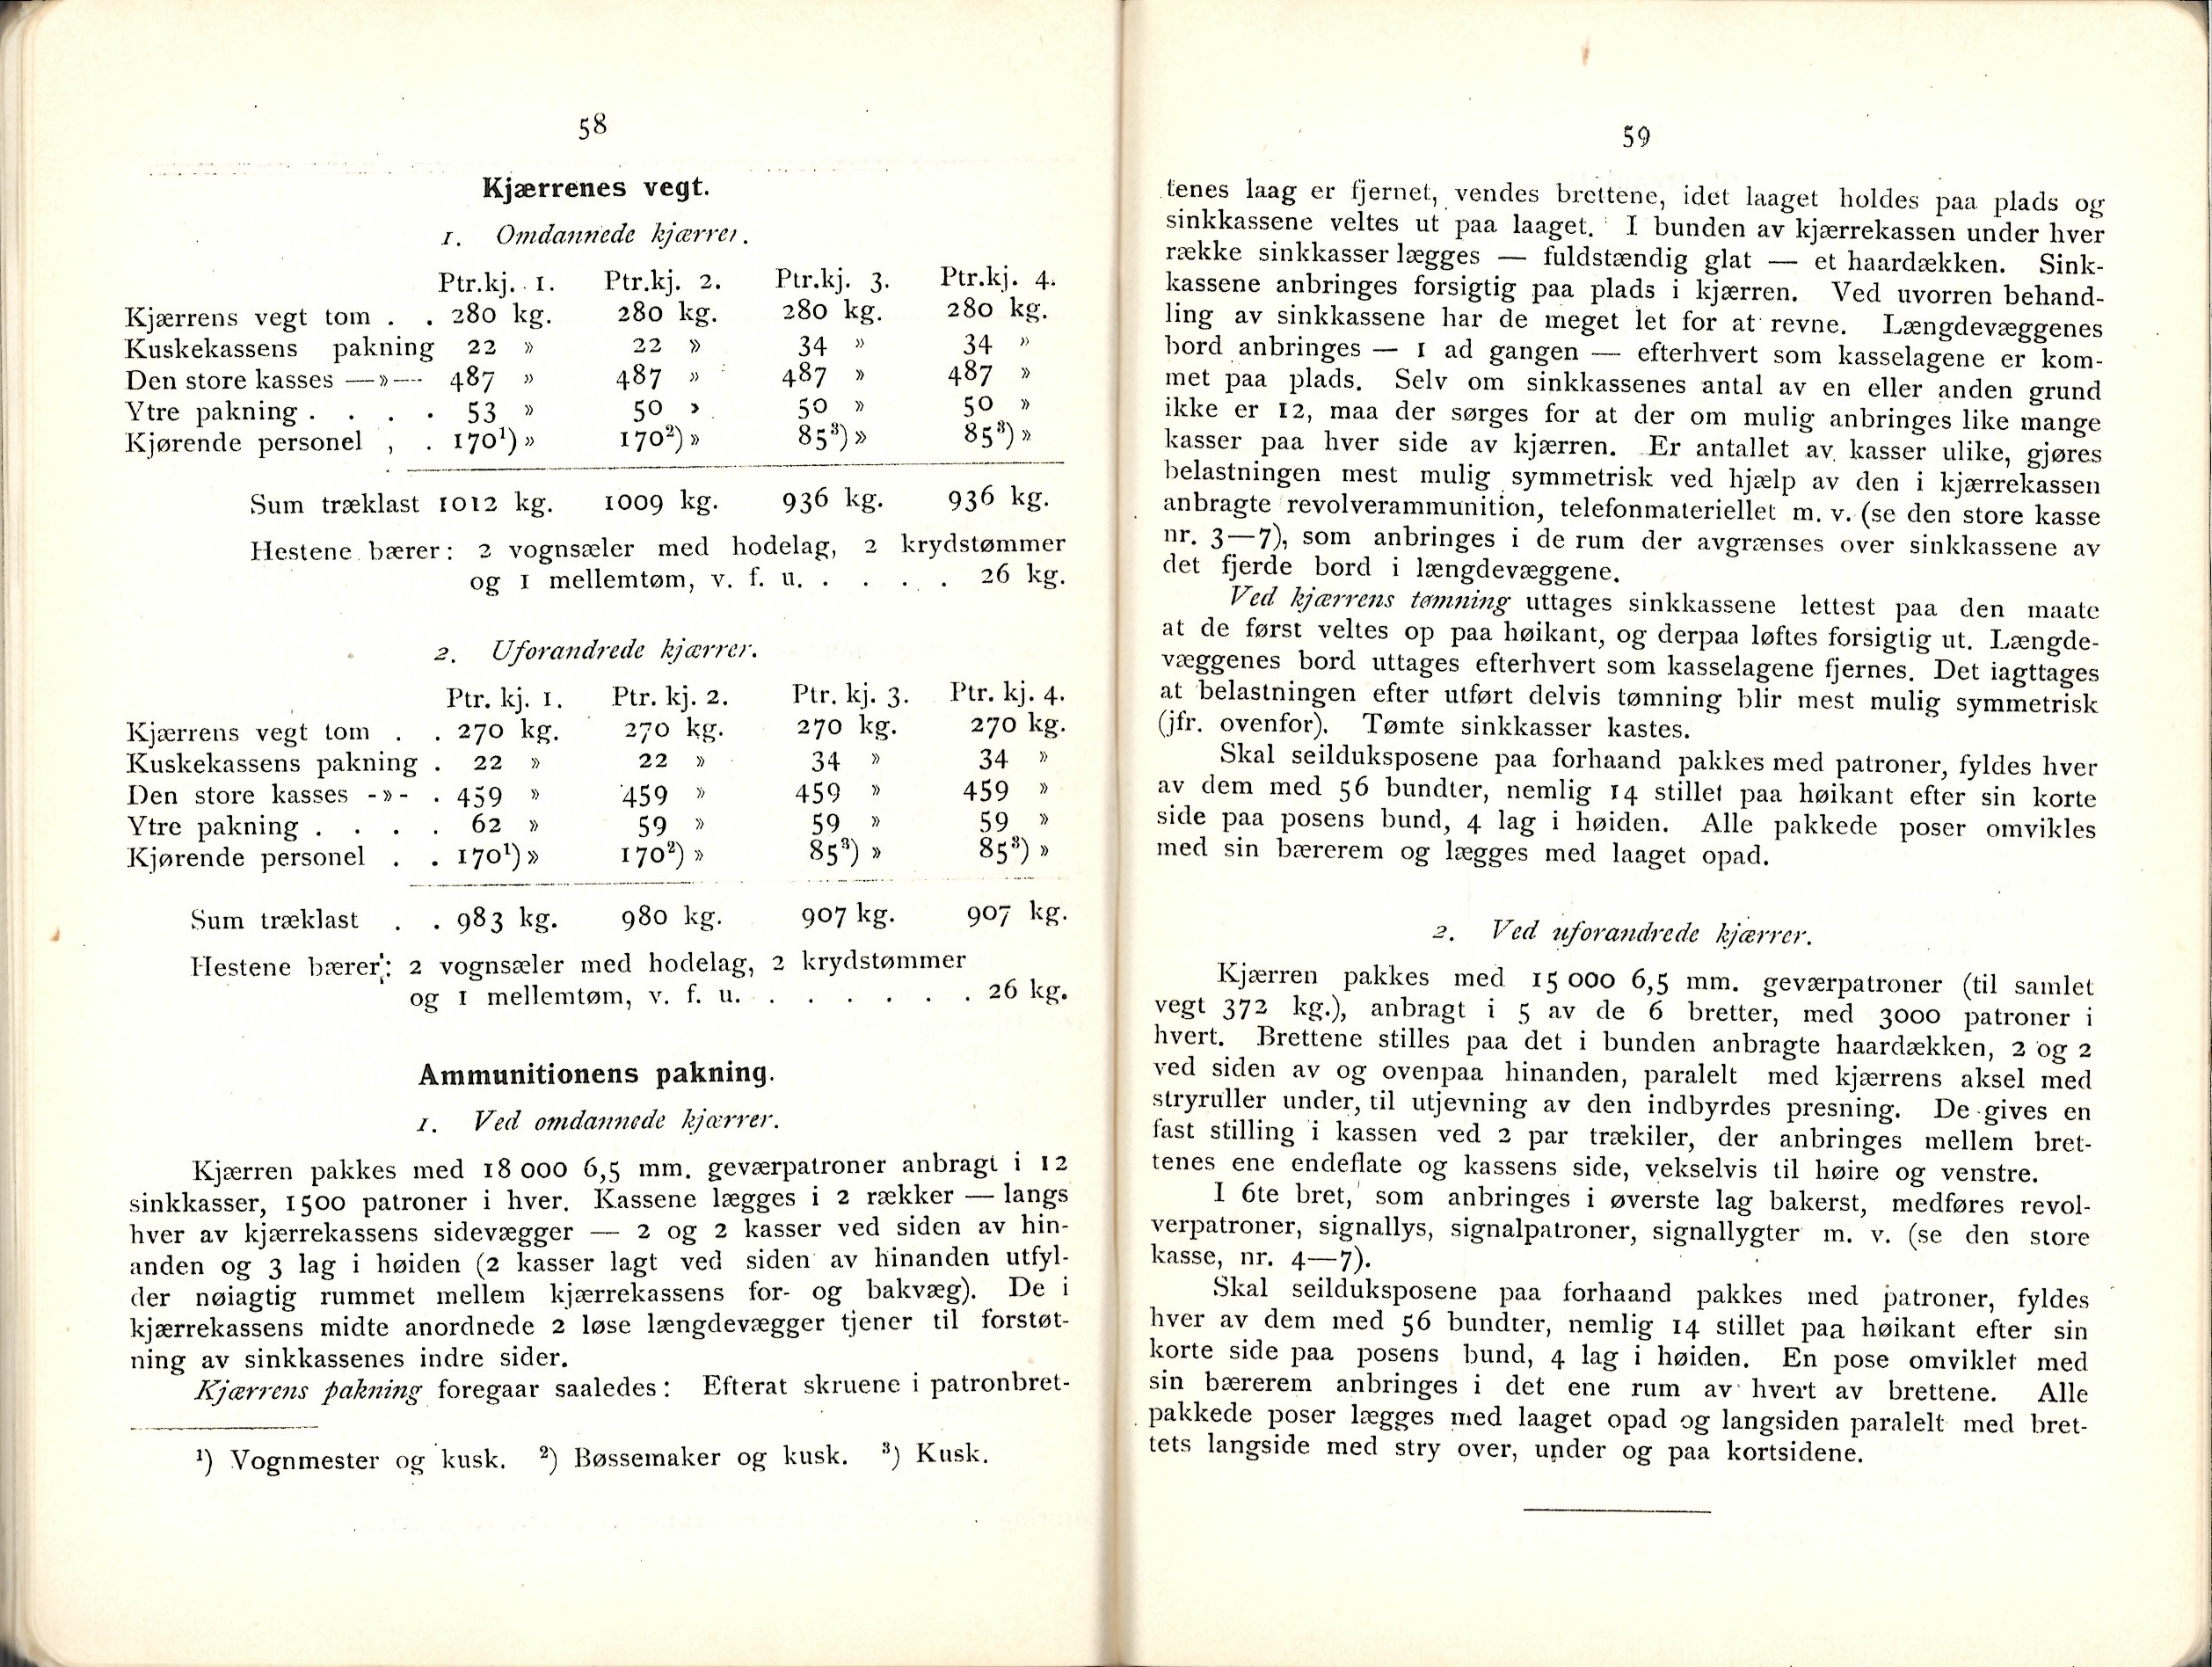 ./doc/reglement/Utrustning/Utrustnings-og-Pakningsplan-1917-14.jpg